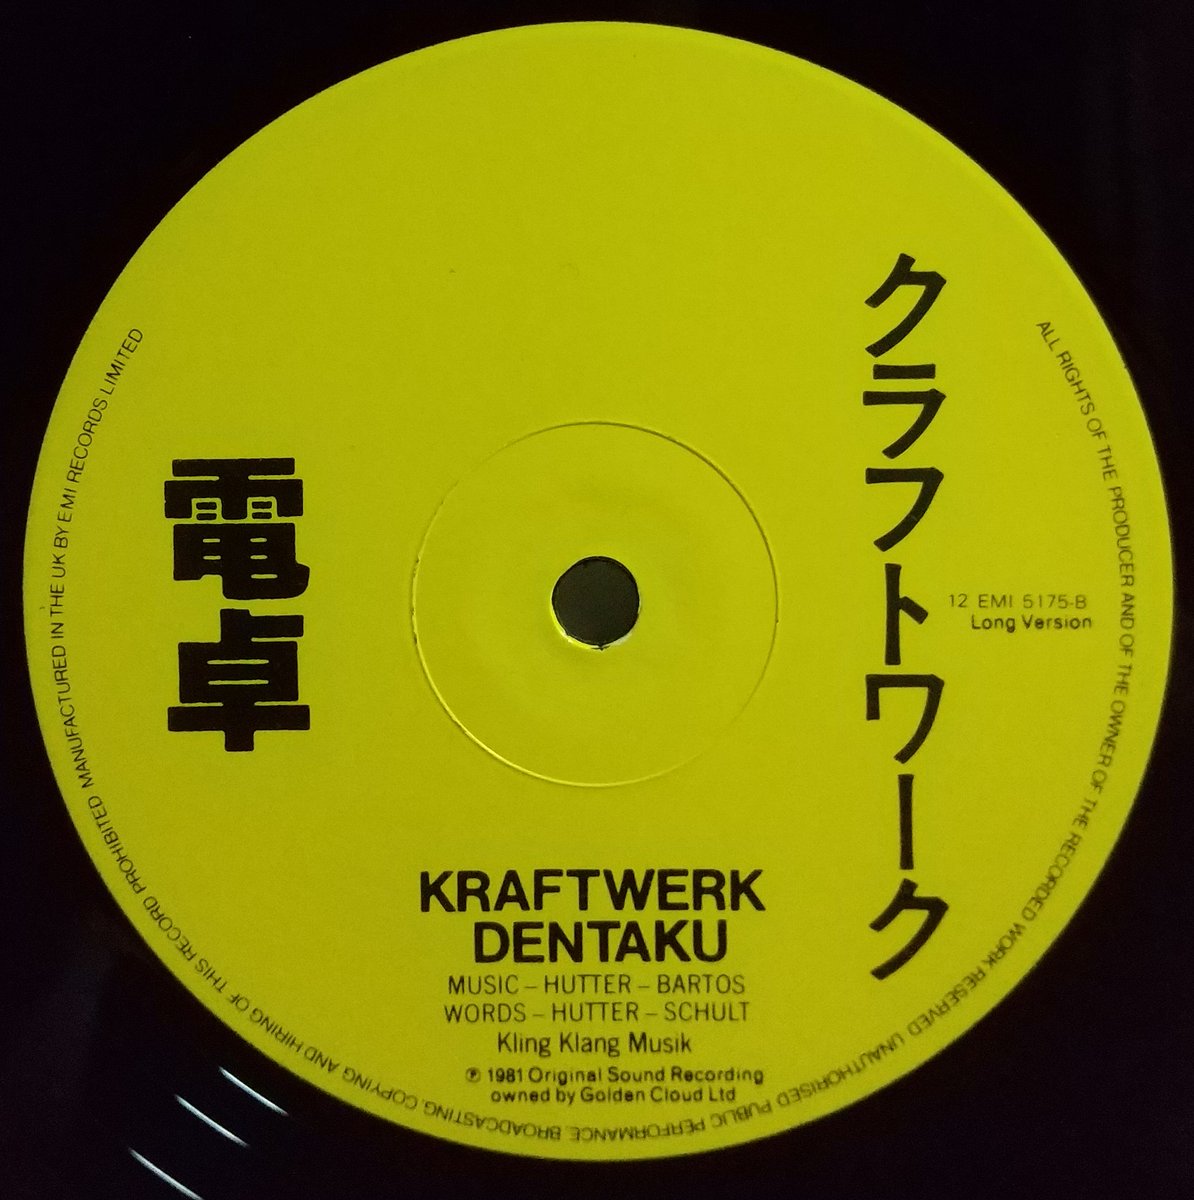 #クラフトワーク #Kraftwerk #電卓 #Dentaku #12inchSingle
UK盤ですが'電卓'が'Long Version'表記。7inchしか知らないので違いがあるのかわからない。なんだろう🤔'ボクハオンガクカデンタクカタテニ～🎹'